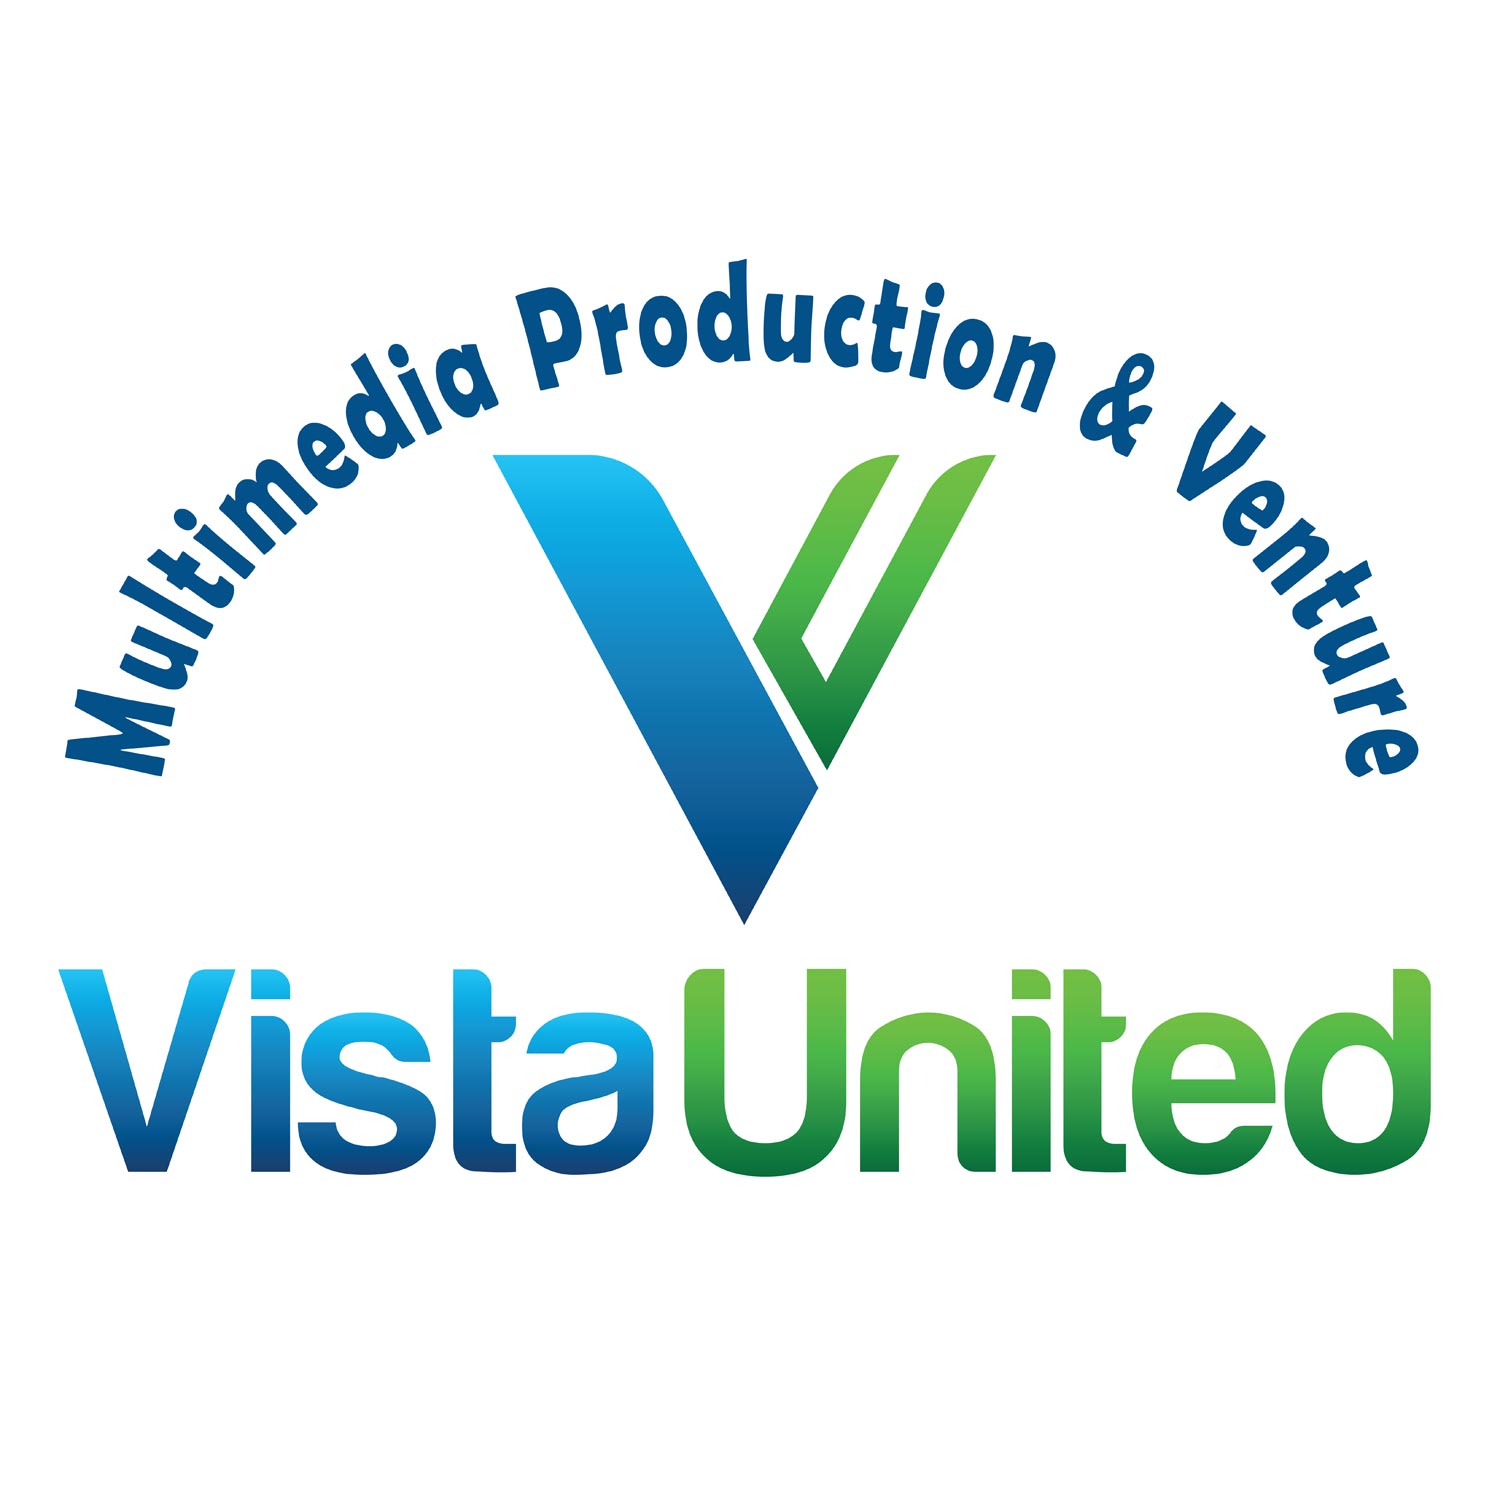 Vista United